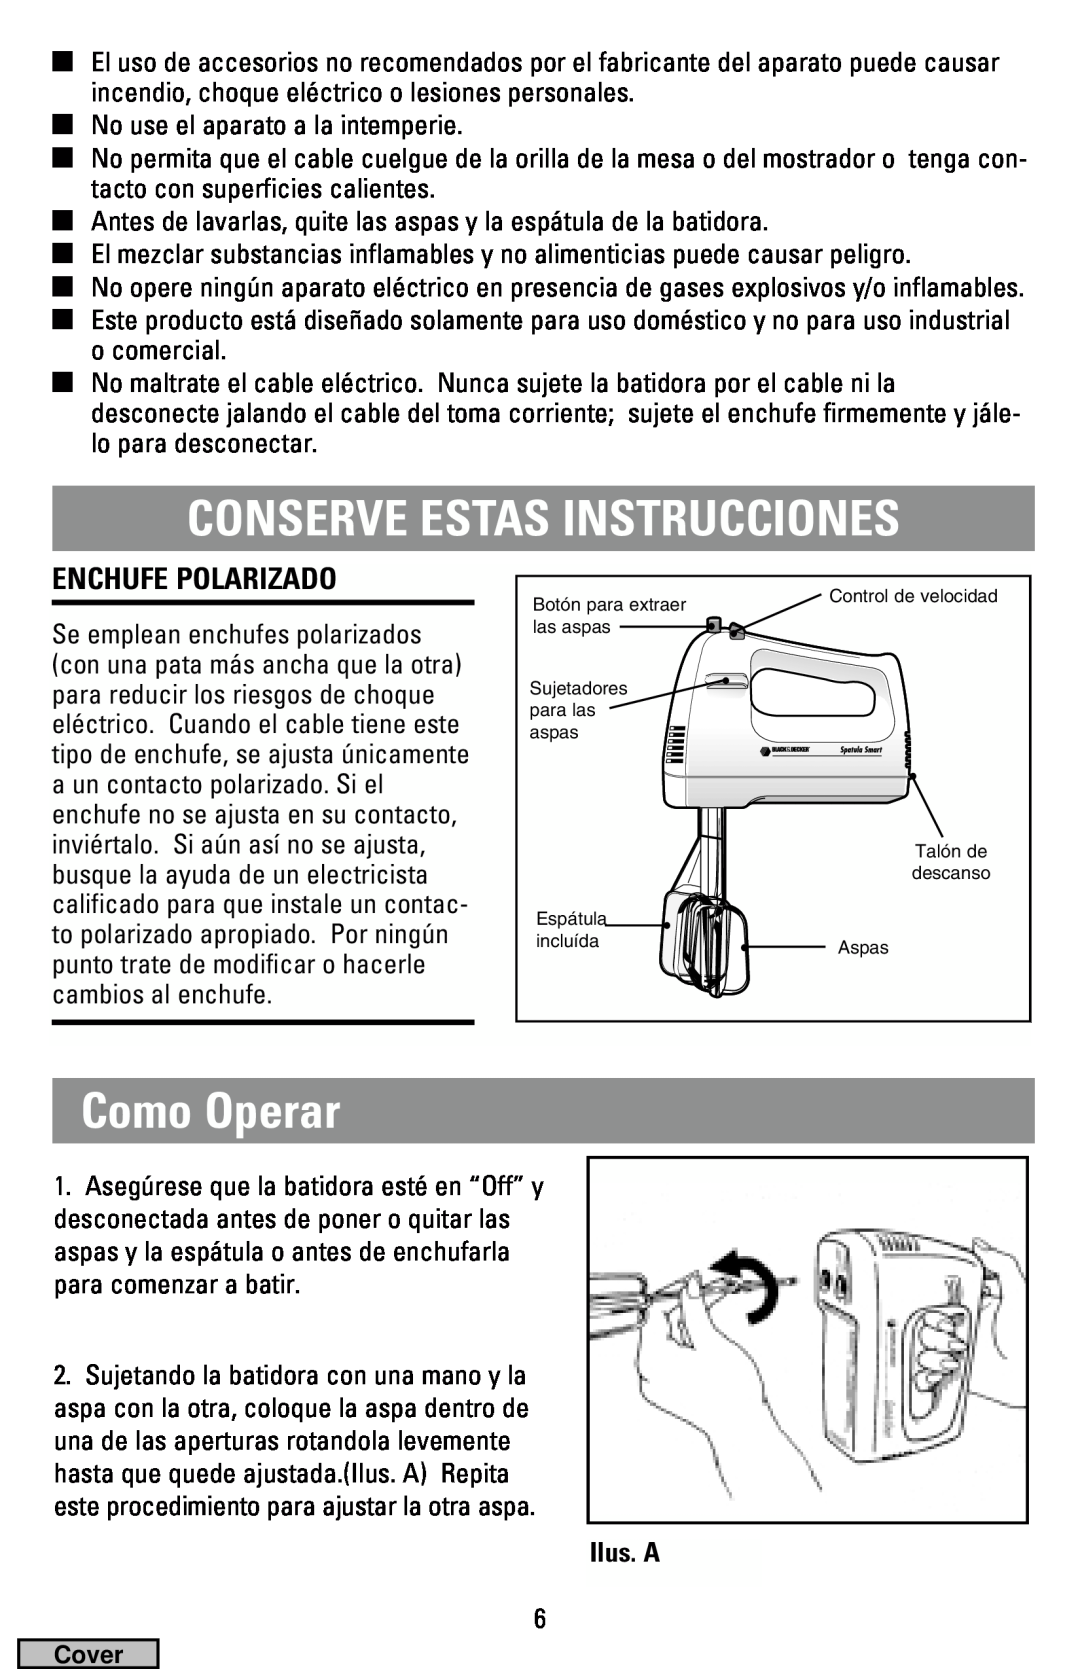 Black & Decker MX40 manual Conserve Estas Instrucciones, Como Operar, Enchufe Polarizado, Ilus. A 